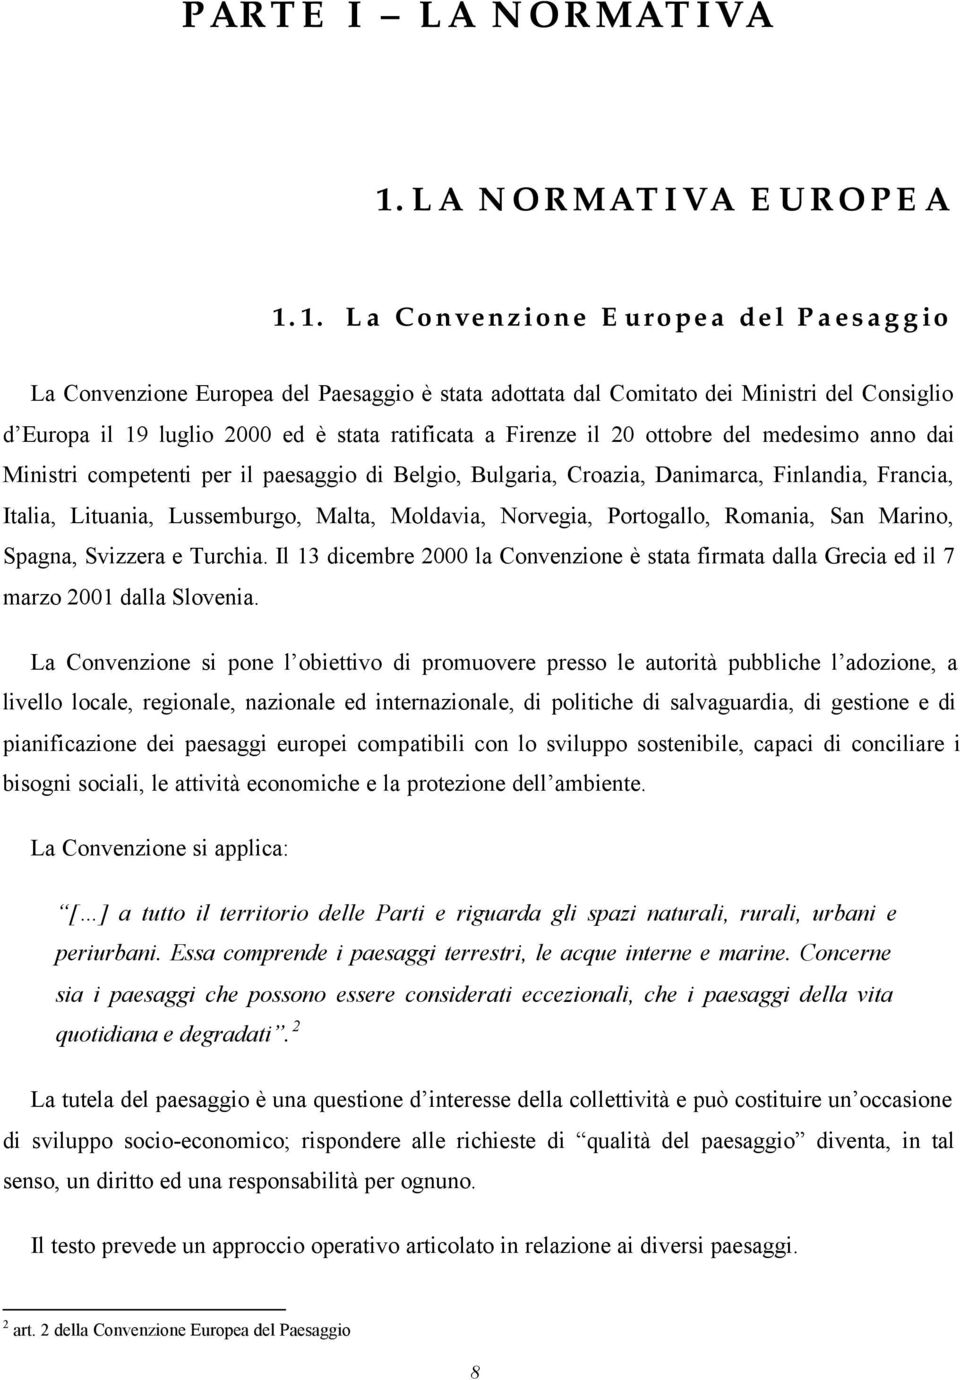 1. La Convenzione Europea del Paesaggio La Convenzione Europea del Paesaggio è stata adottata dal Comitato dei Ministri del Consiglio d Europa il 19 luglio 2000 ed è stata ratificata a Firenze il 20